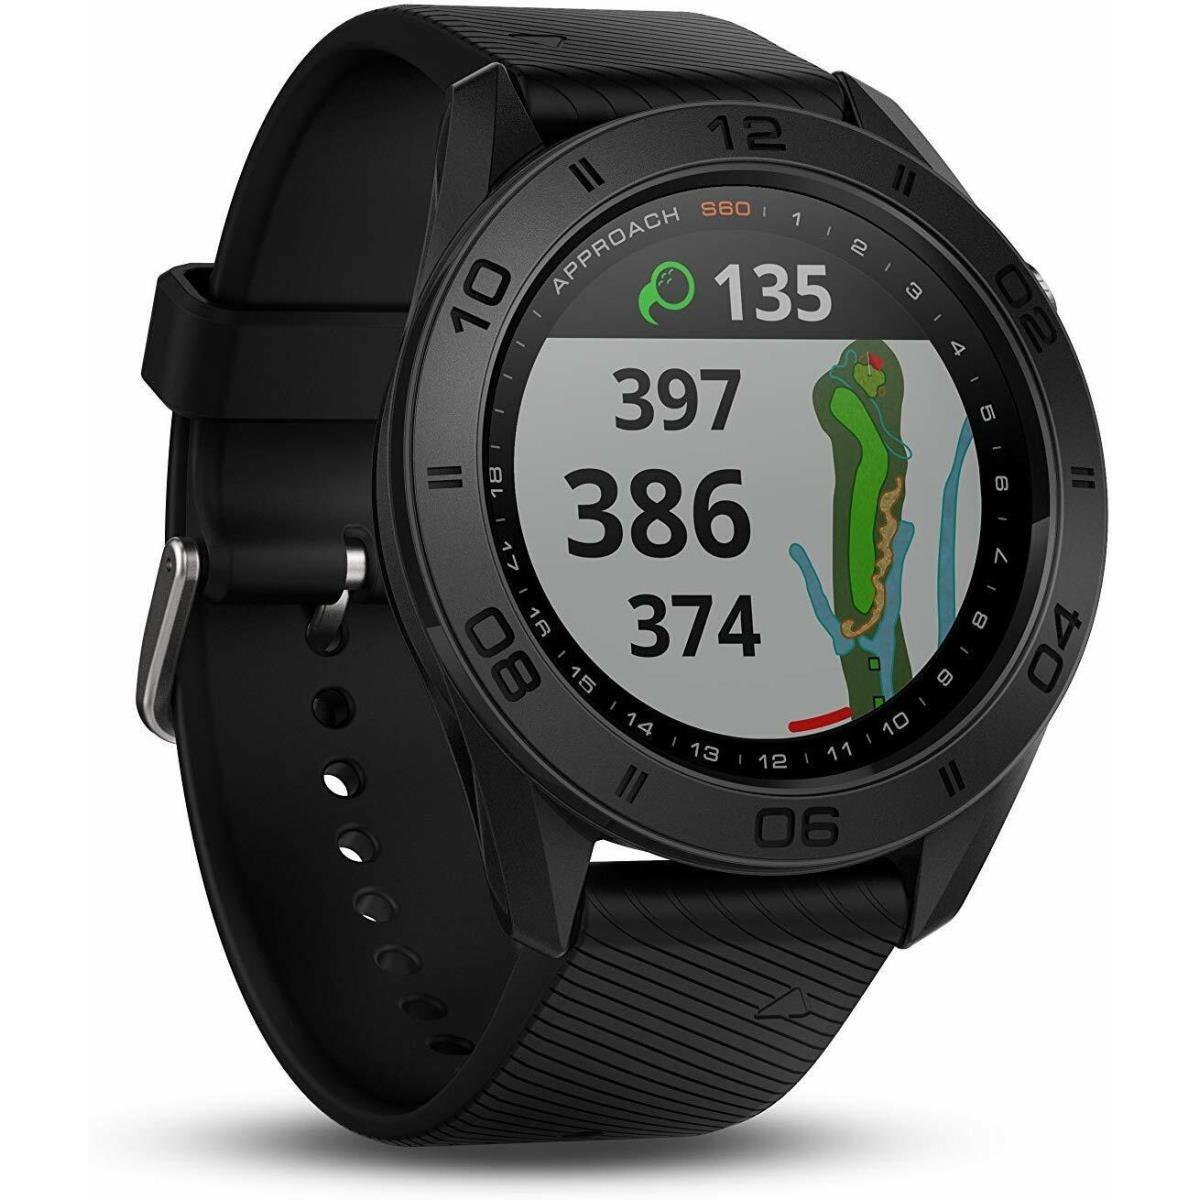 Garmin Approach S60 Golf Watch Gps Smart Watch Touchscreen Display Black